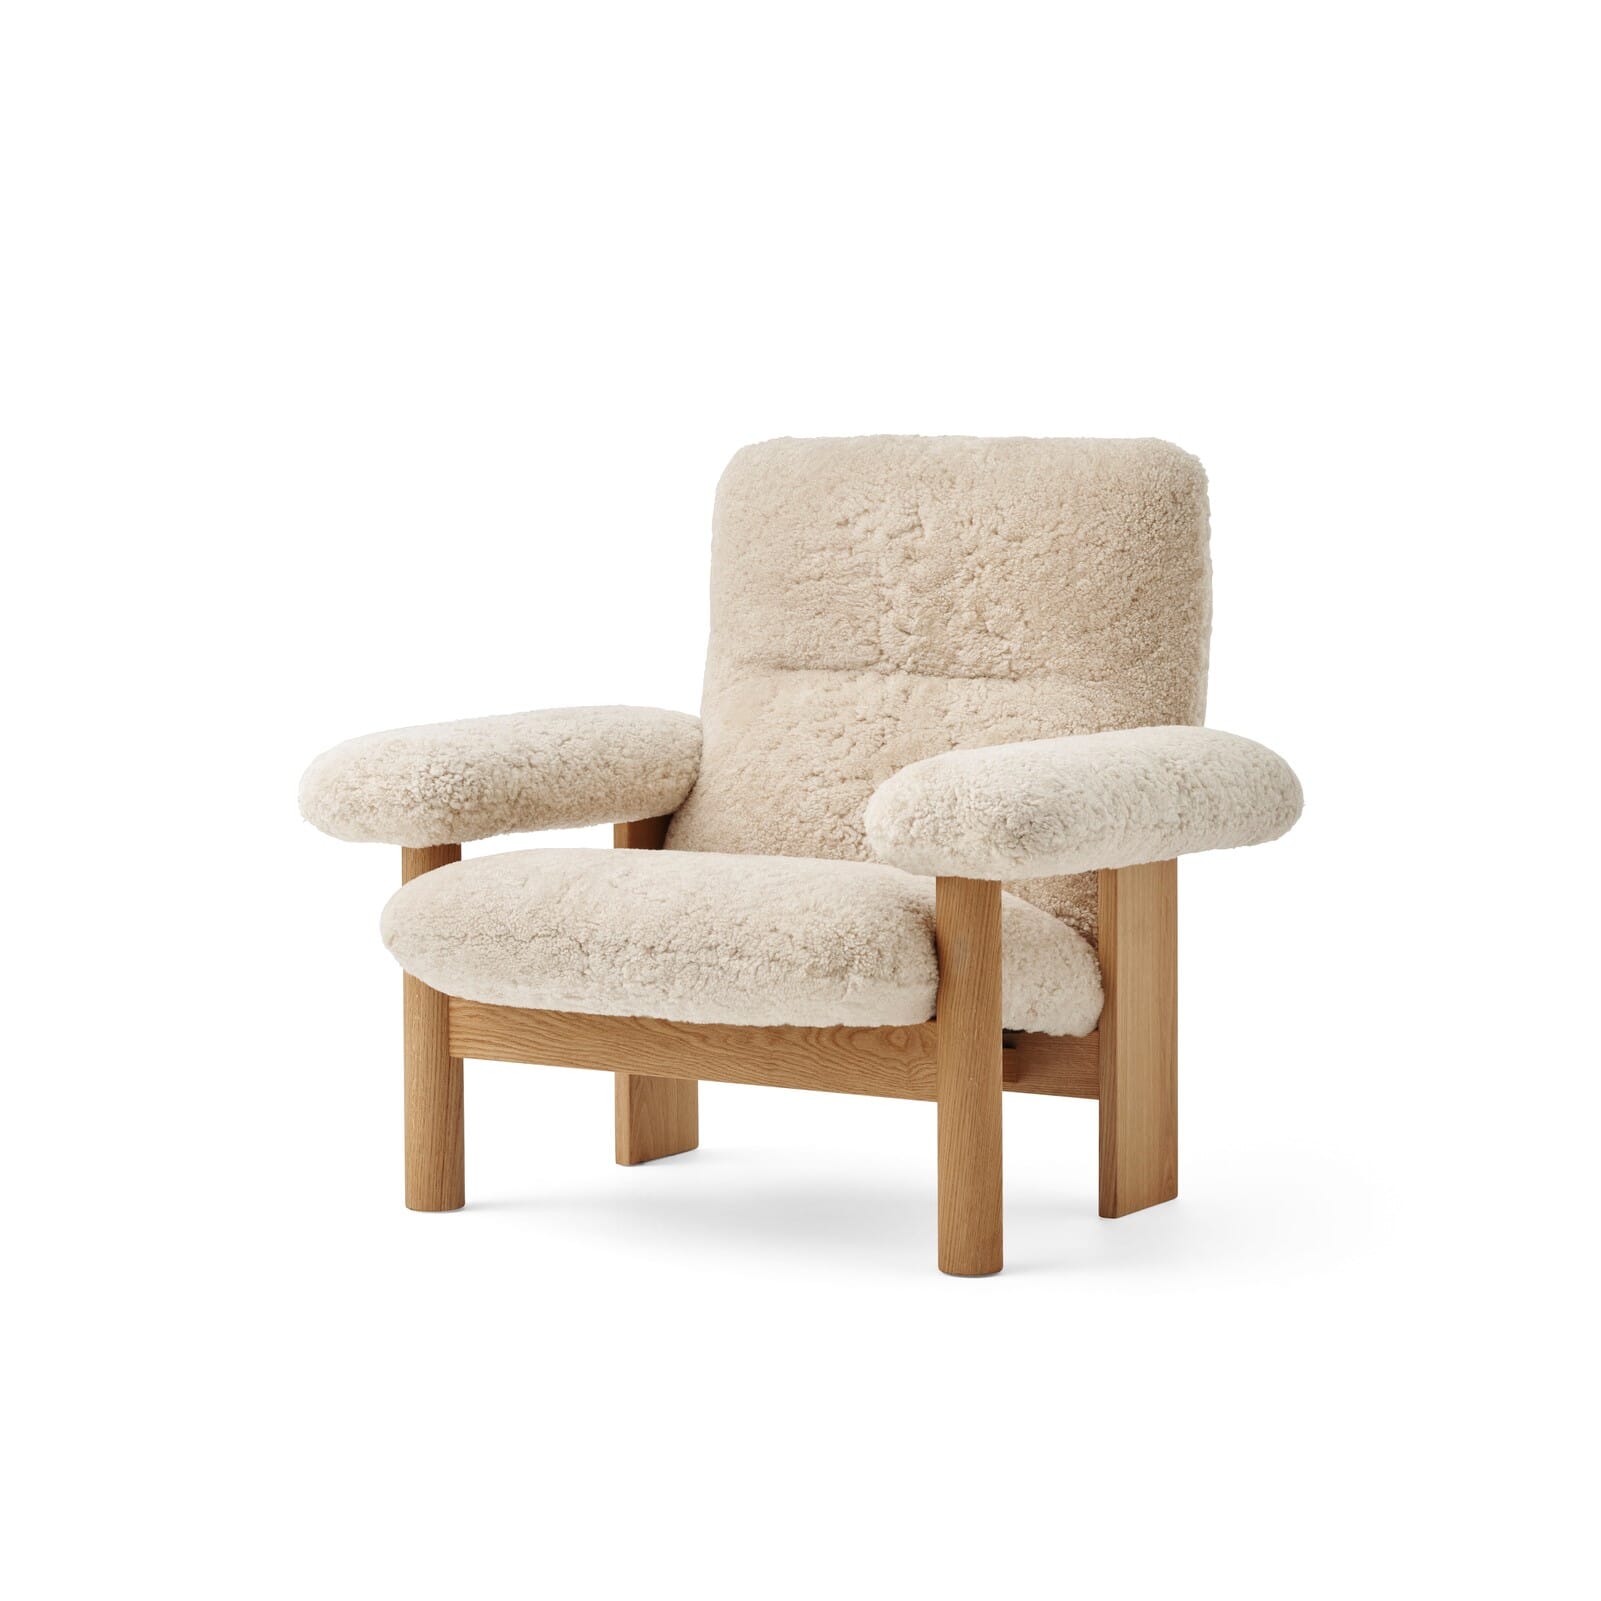 Bilde av Audo Copenhagen - Audo Copenhagen Brasilia Lounge Chair Eik/saueskinn Natur - Lunehjem.no - Interiør På Nett